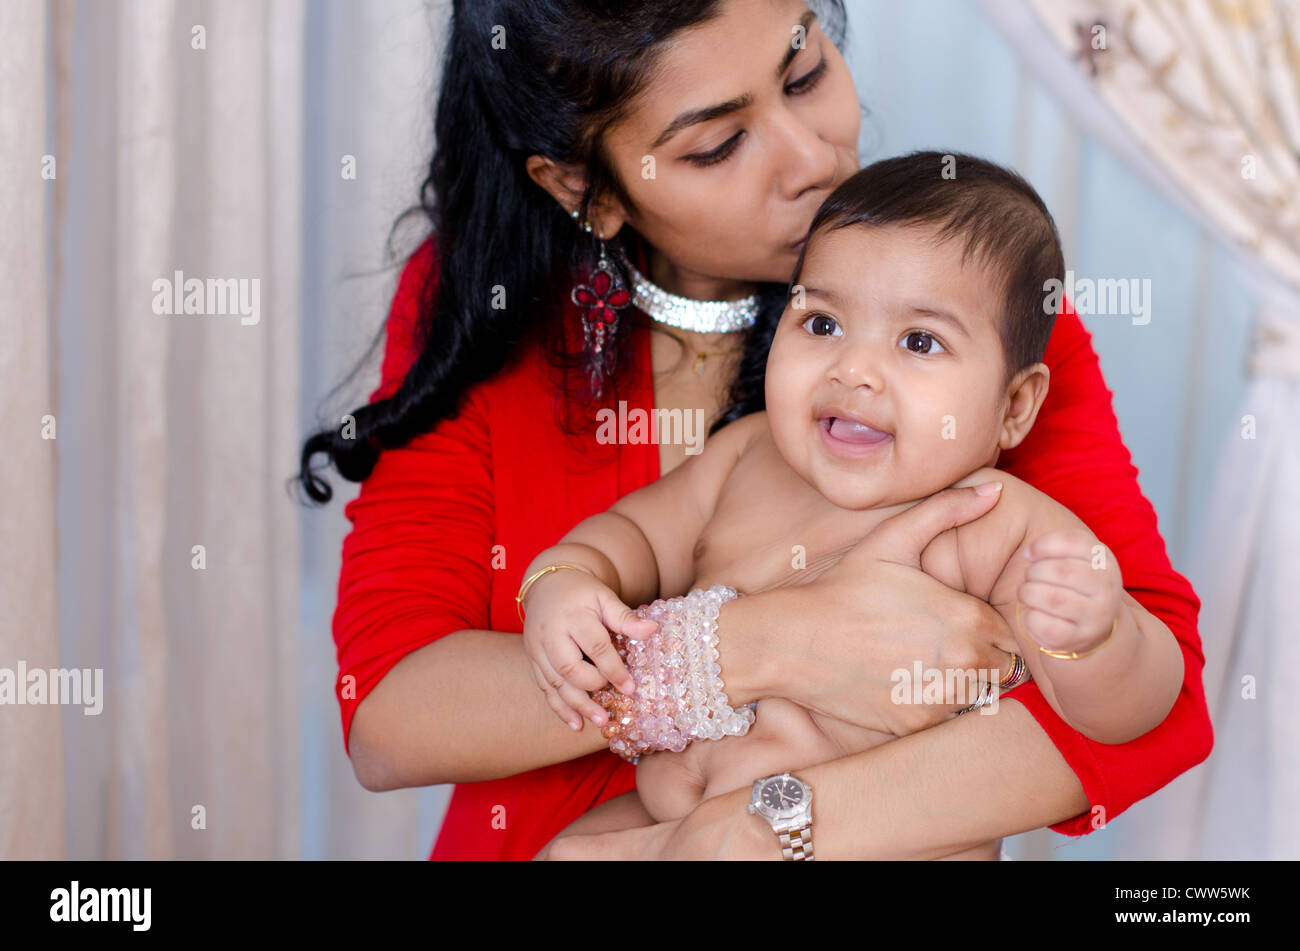 Madre India besando a su hija, interior Foto de stock